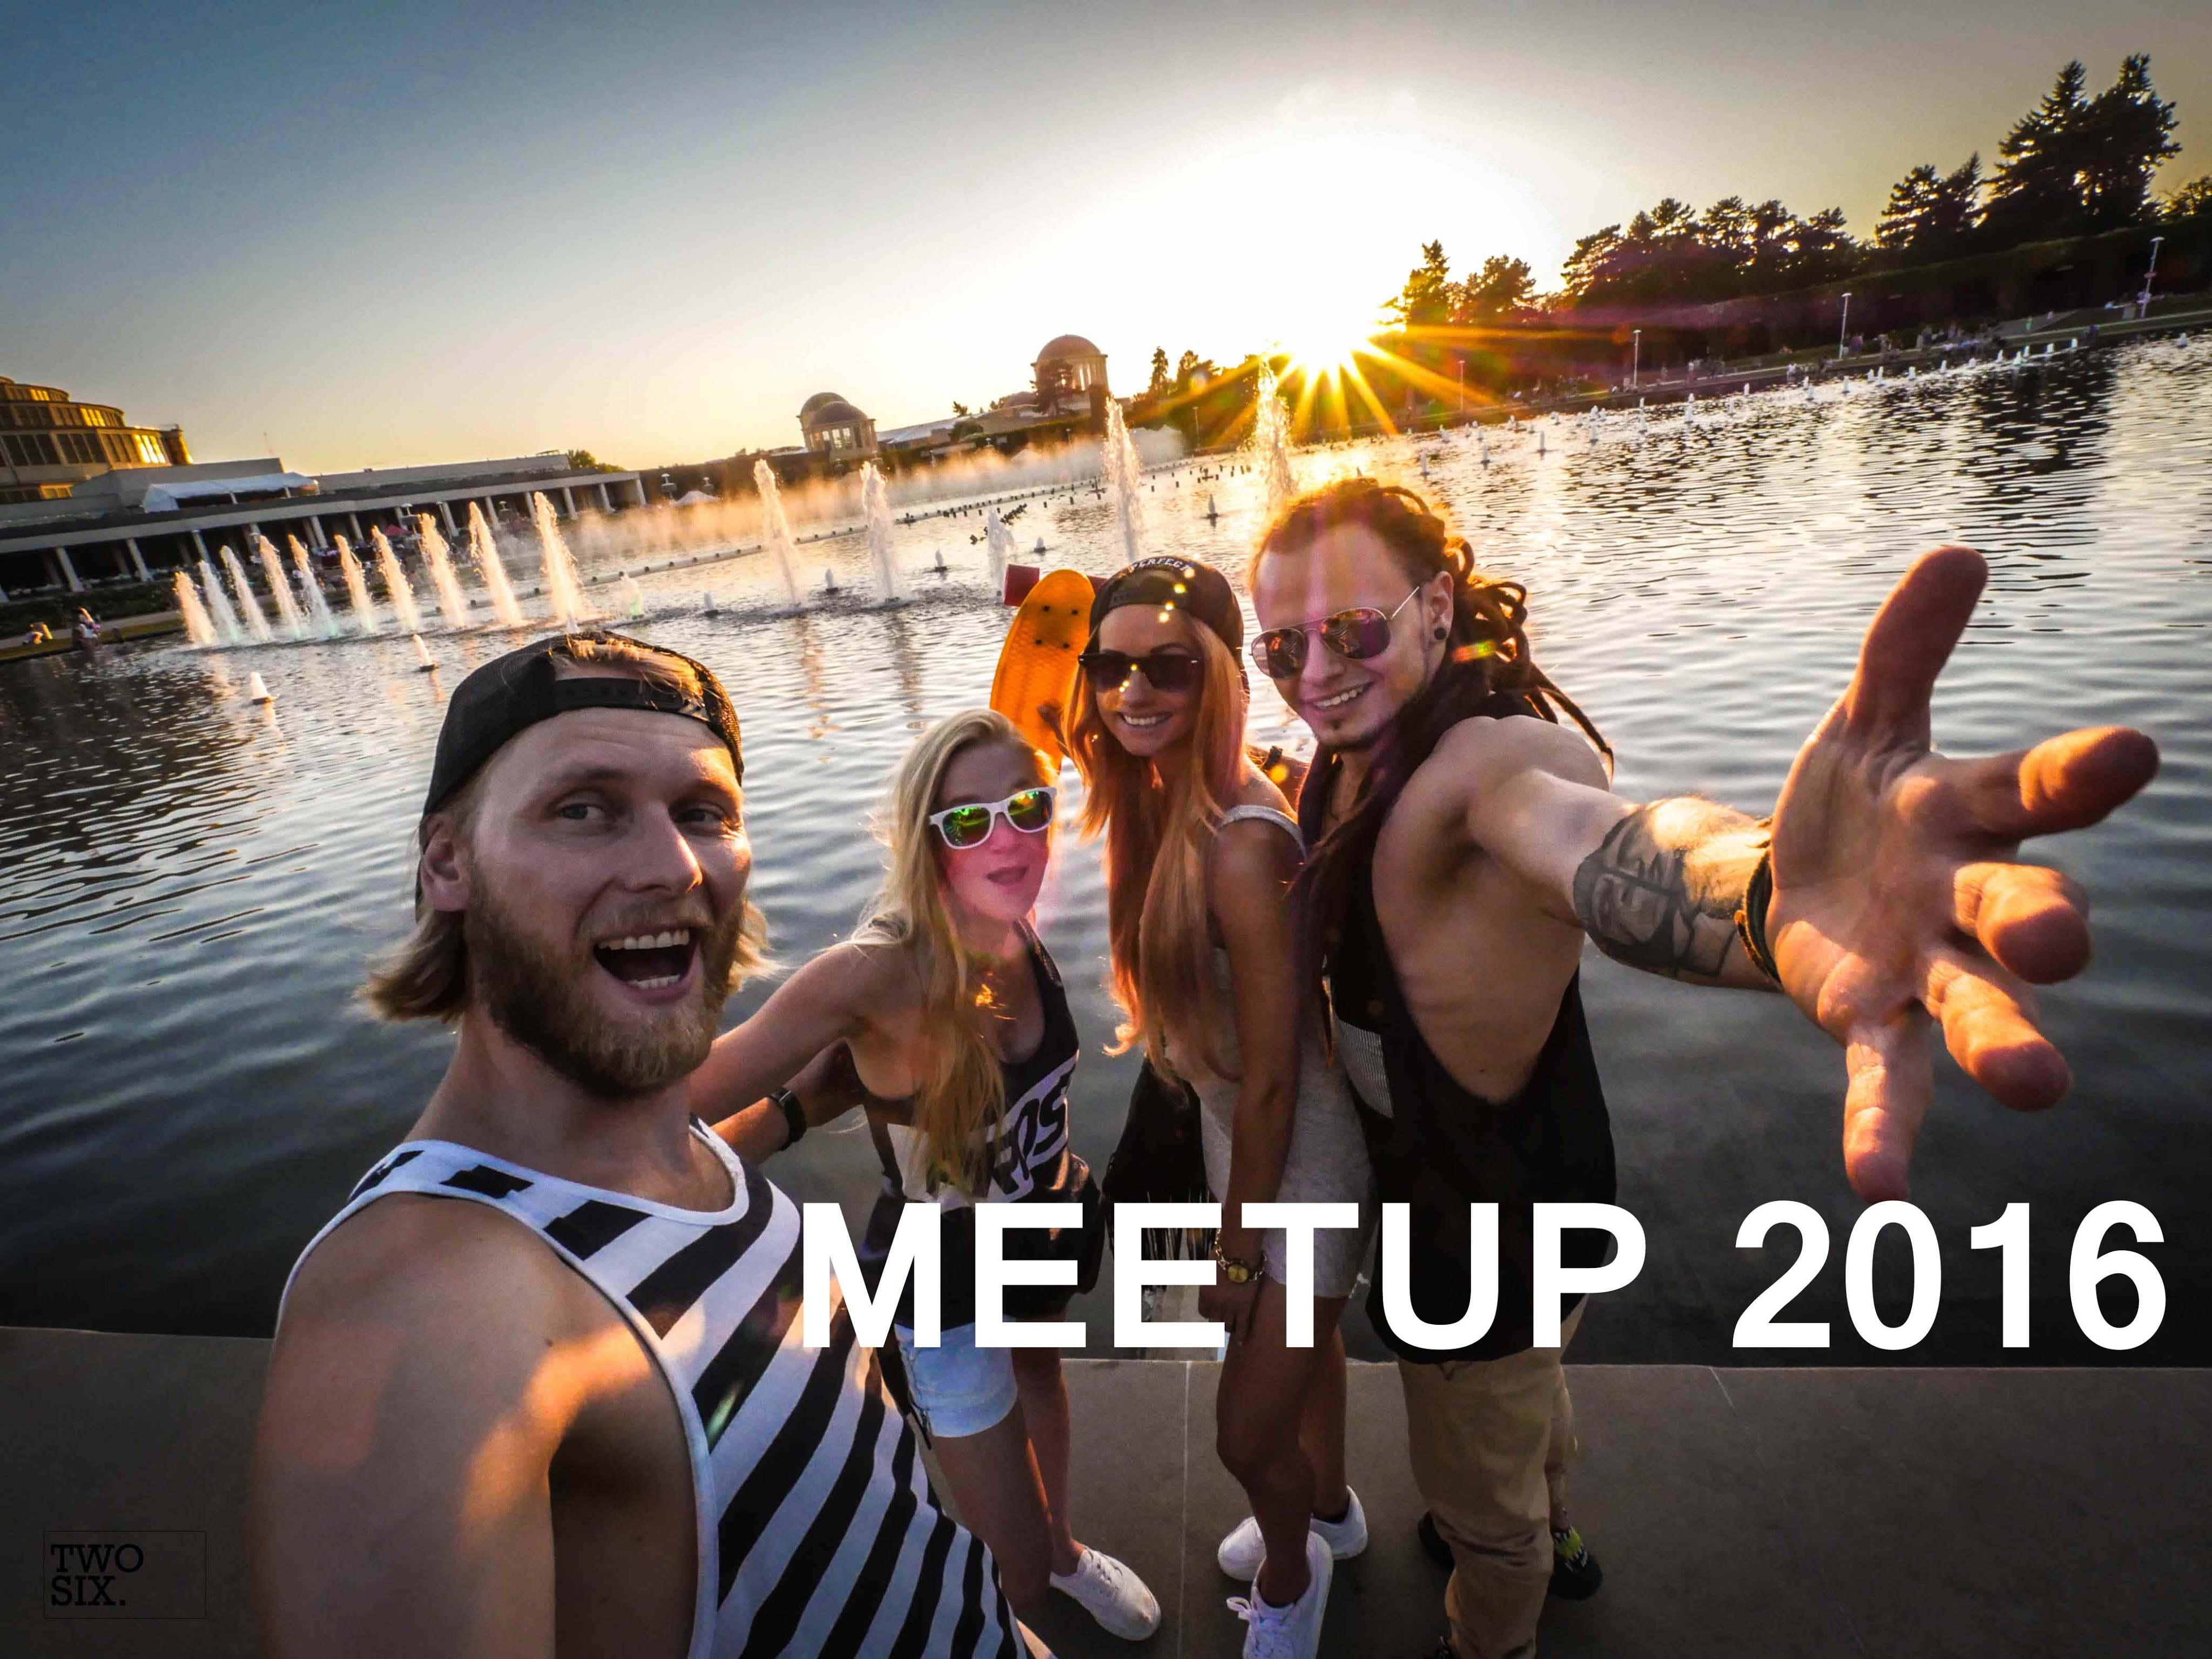 Meetup WrocÅaw 2016 | Nasz pierwszy Meetup i Backstage Fit Lovers | Treneiro Vlog ep. 26 - YouTube